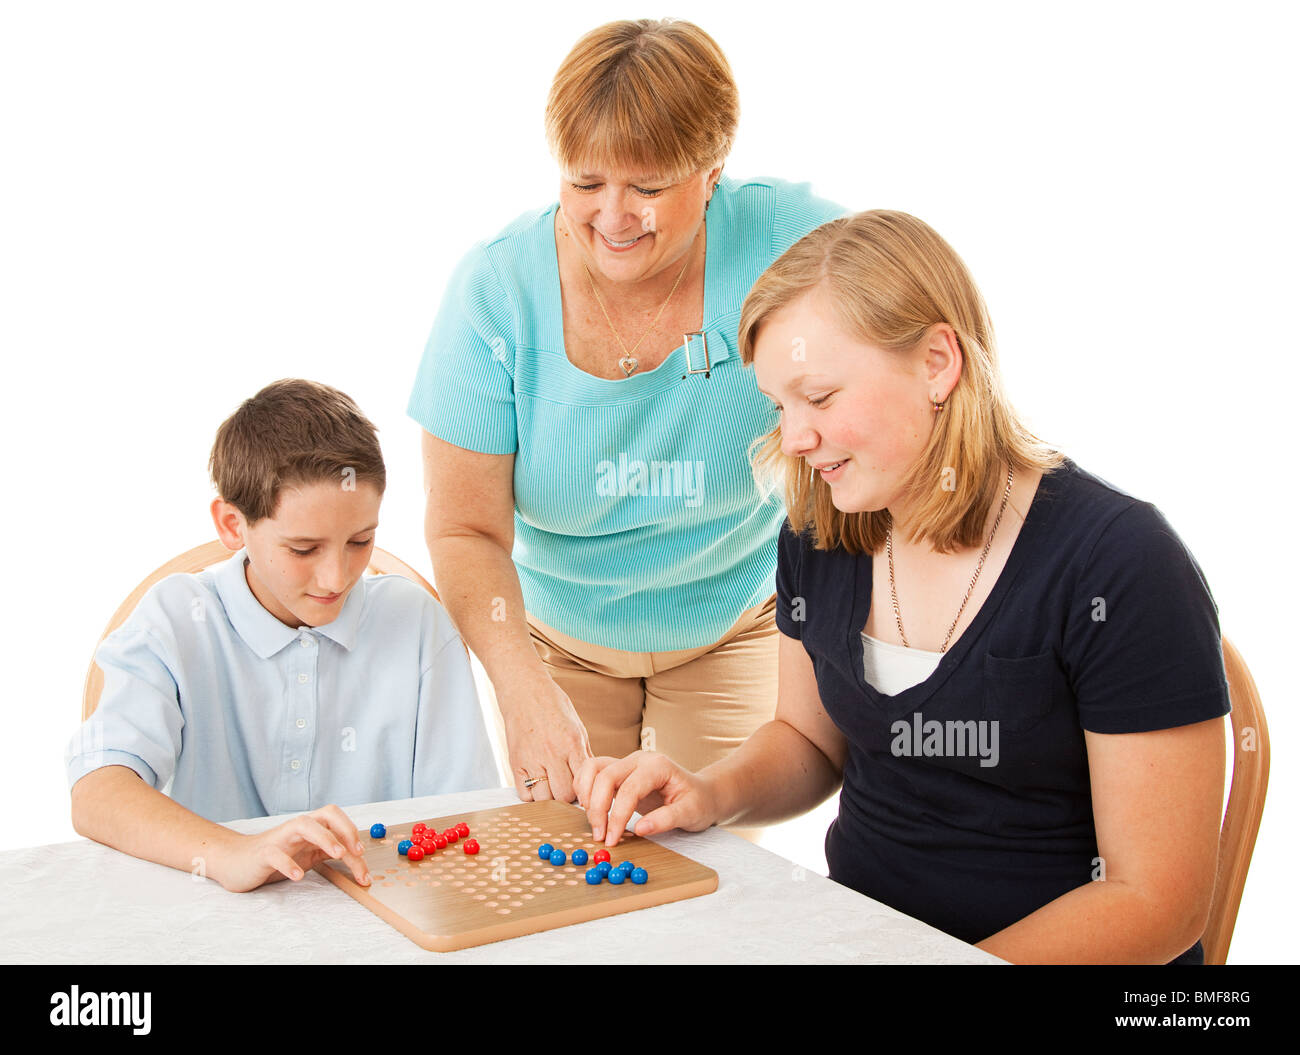 La mère et deux enfants jouer à des jeux de société. Isolé sur blanc. Banque D'Images